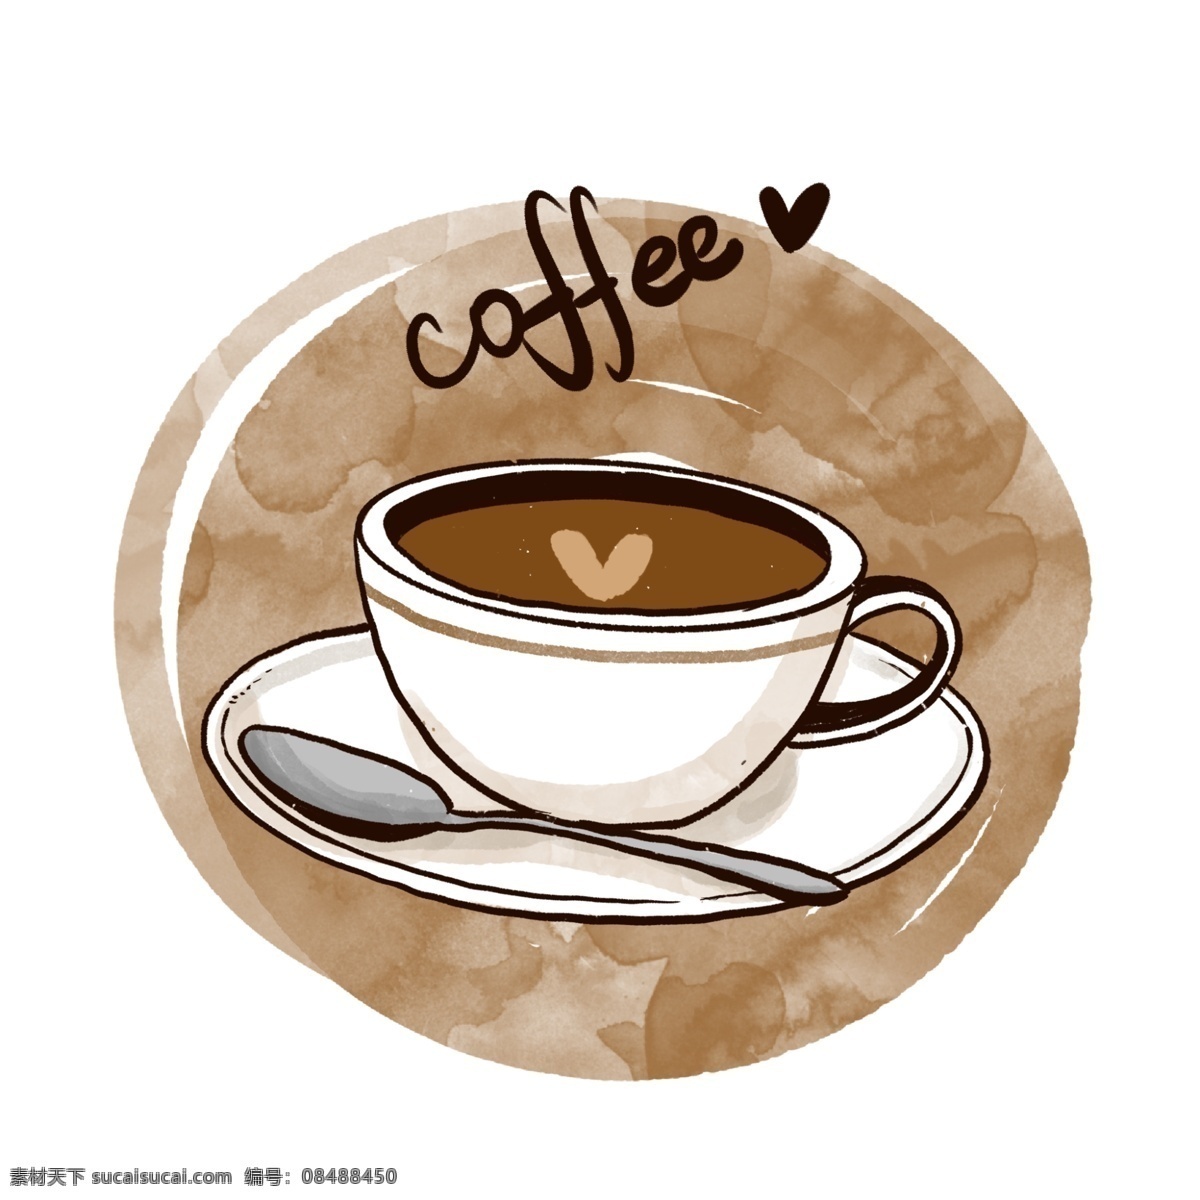 一杯 咖啡 铁 免 抠 杯子 咖啡杯 马克杯 卡通杯子 早安 咖啡店 小资 棕色 勺子 咖啡勺 茶杯 拿铁 拉花 美式咖啡